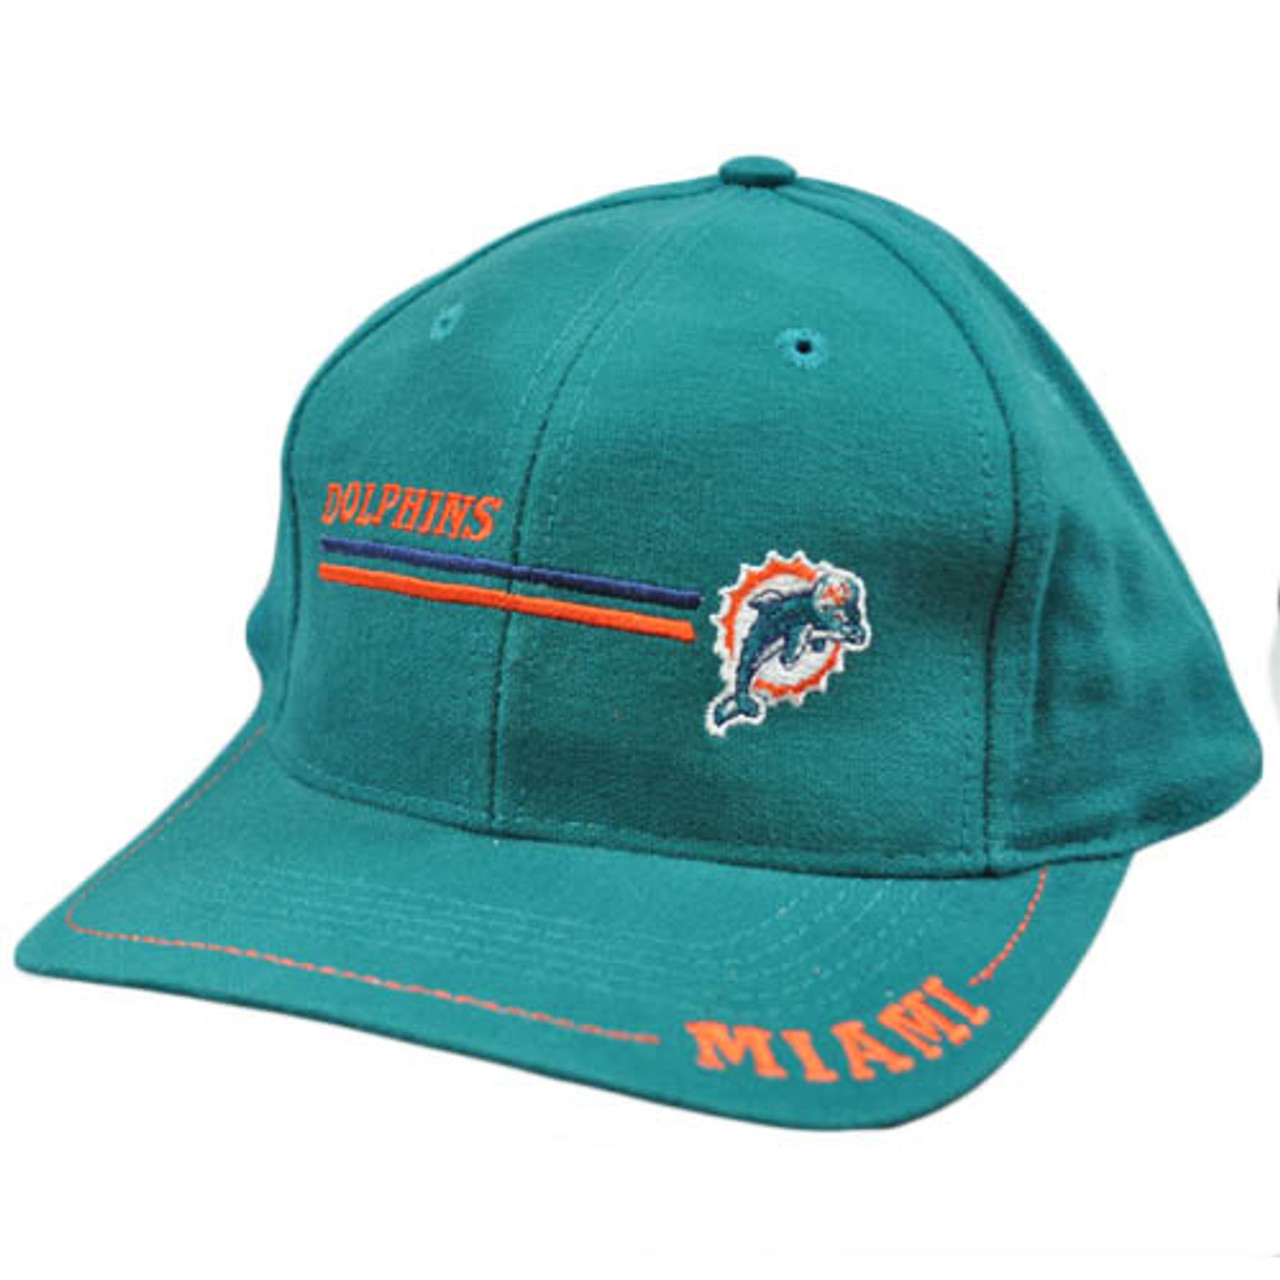 Vintage Los Angeles Raiders Flatbill Snapback Cap Hat